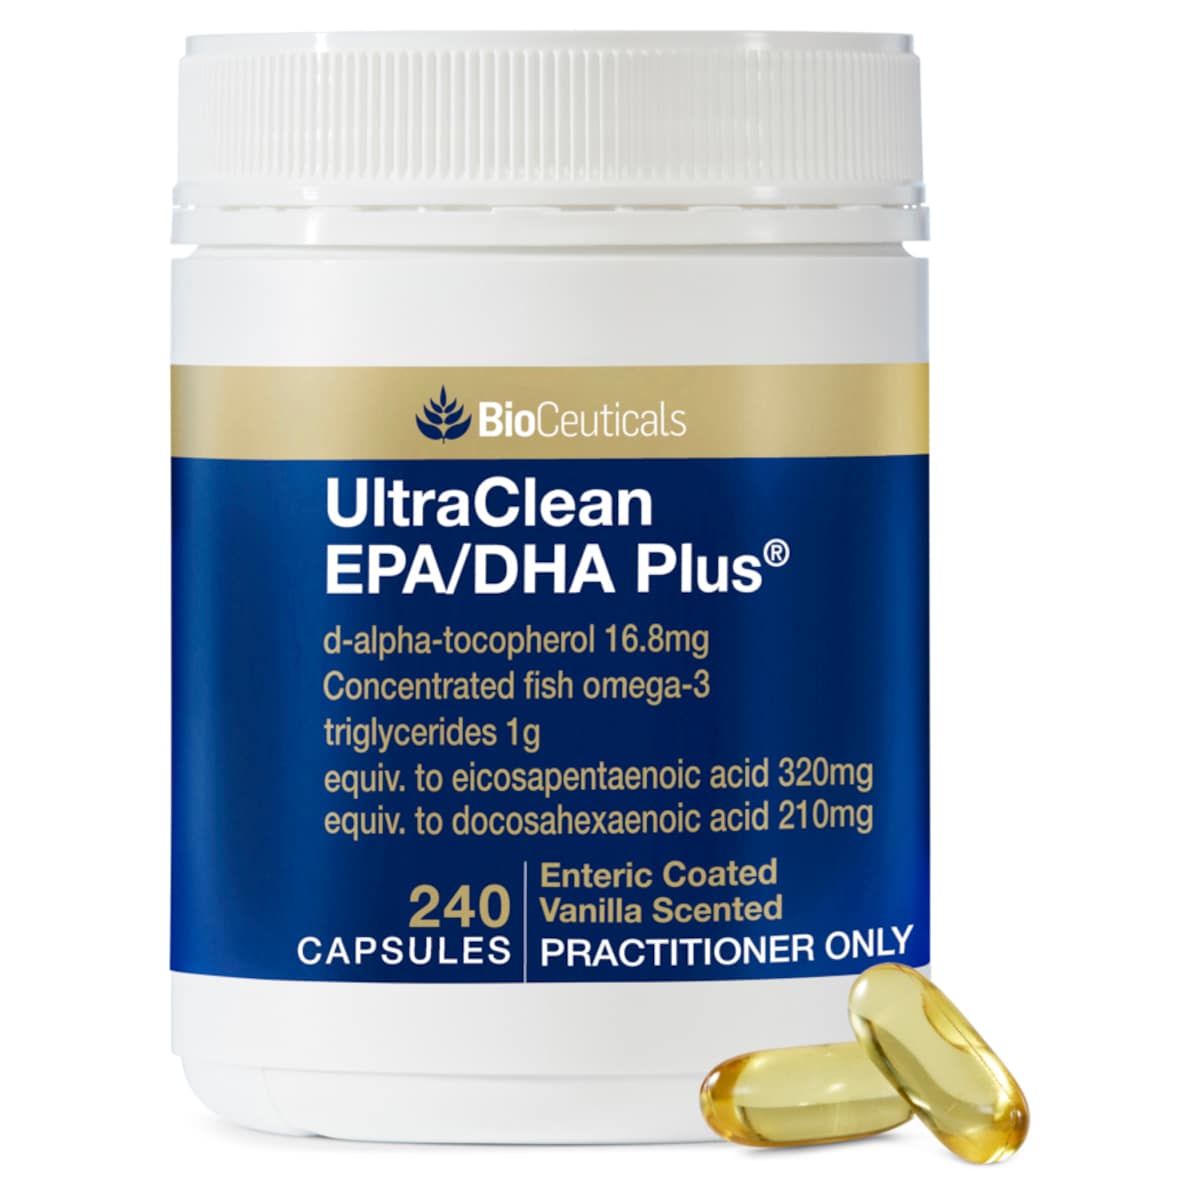 BioCeuticals UltraClean EPA/DHA Plus 240 Capsules Australia